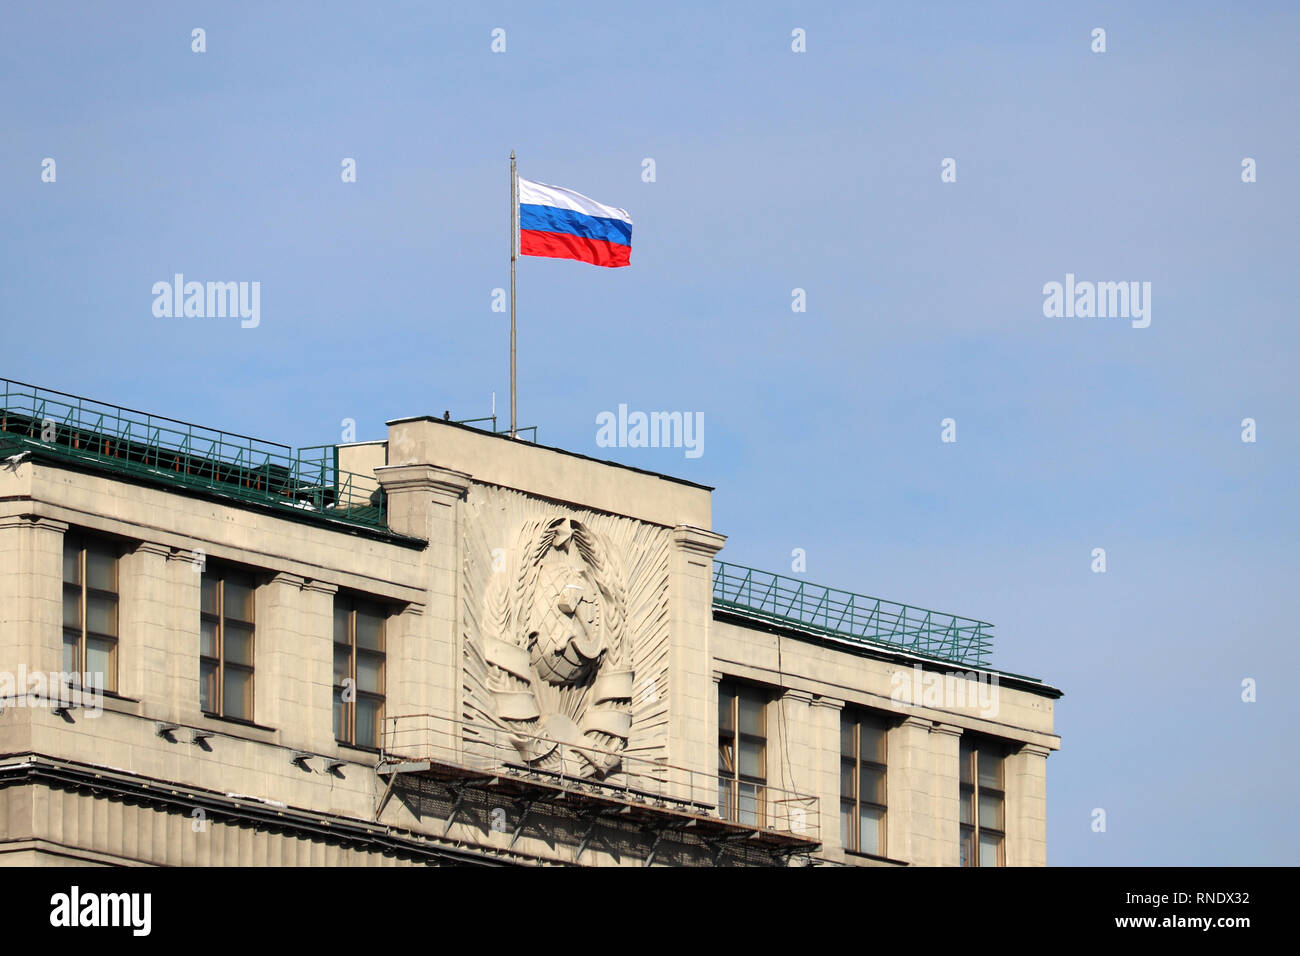 Russische Flagge auf dem Parlamentsgebäude in Moskau gegen den blauen Himmel. Fassade der Staatsduma Russlands mit sowjetischen Wappen Stockfoto